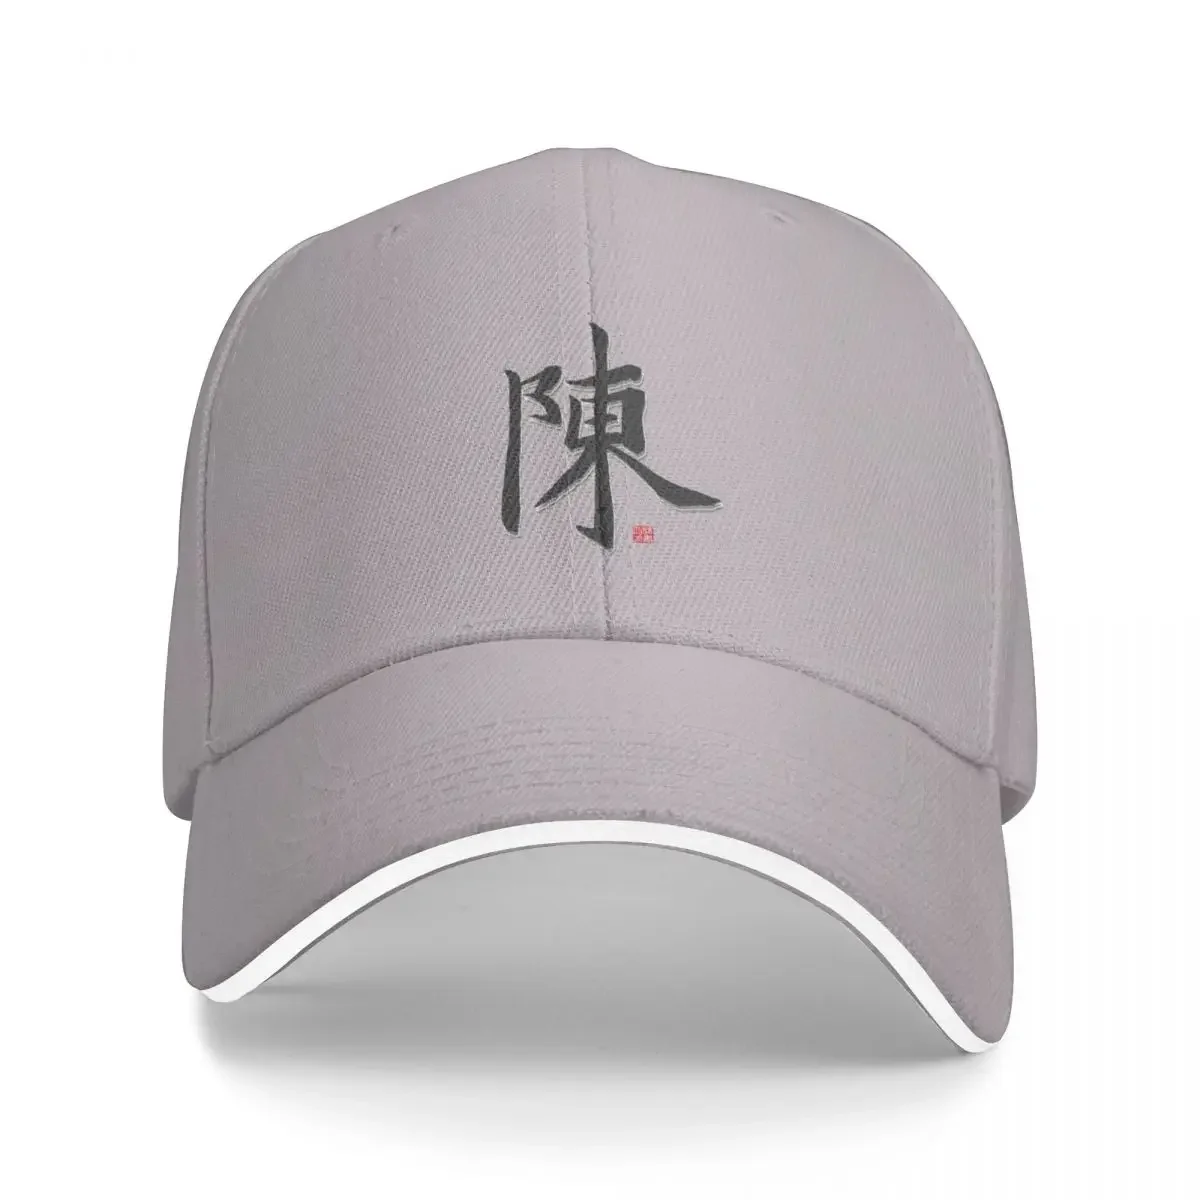 

Tan SurnameCap Baseball Cap Cap hat streetwear beach baseball cap men Women's